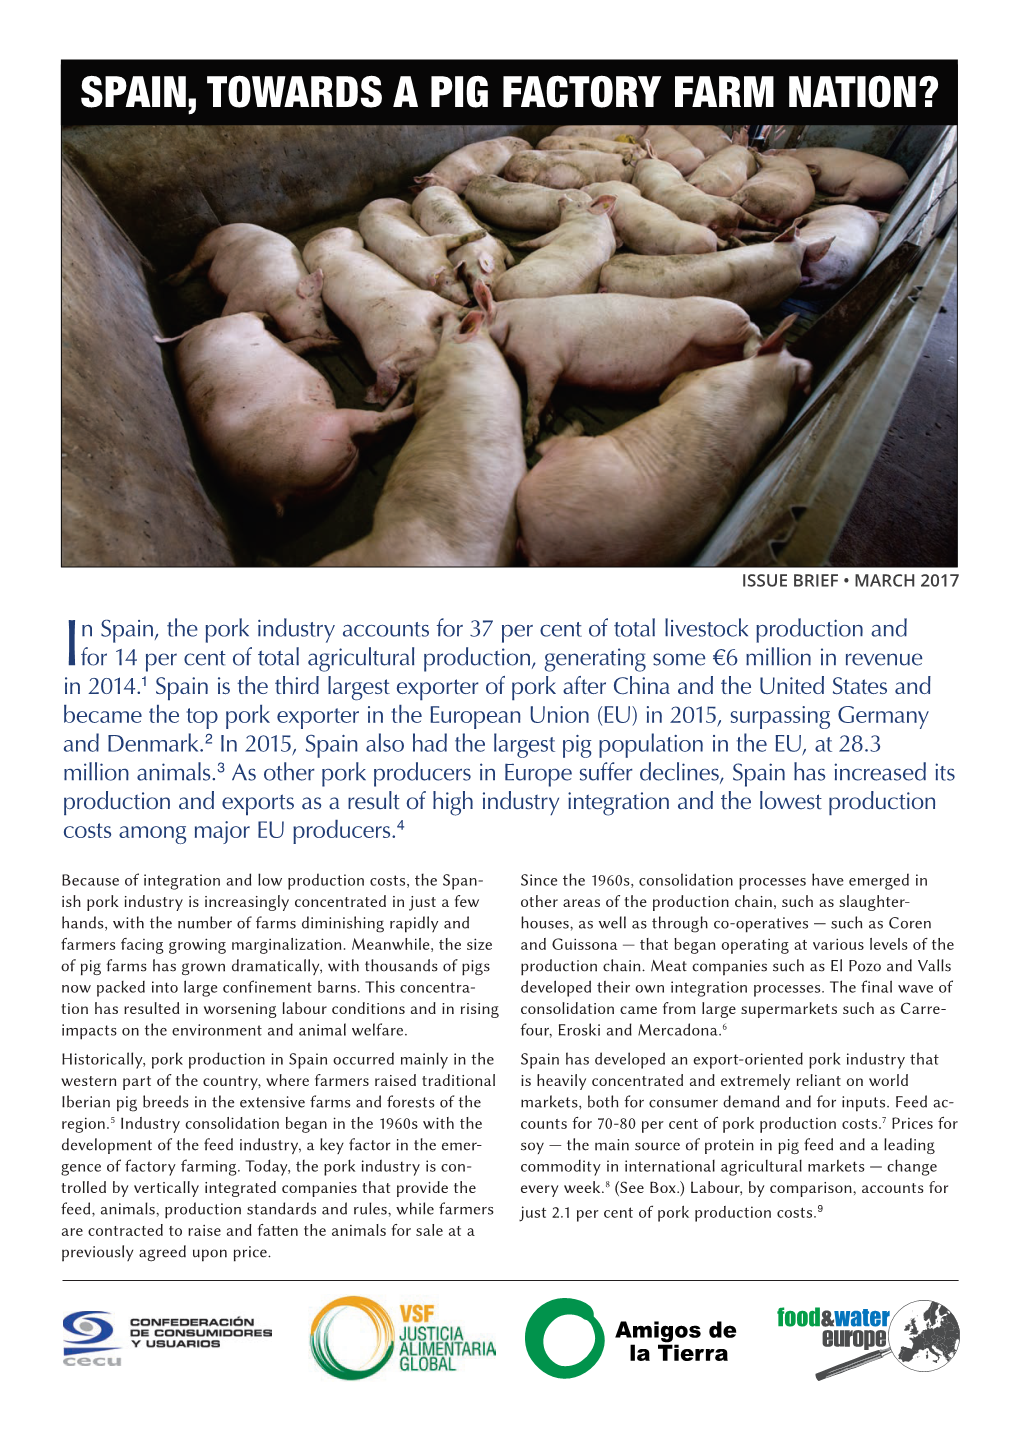 Spain, Towards a Pig Factory Farm Nation?